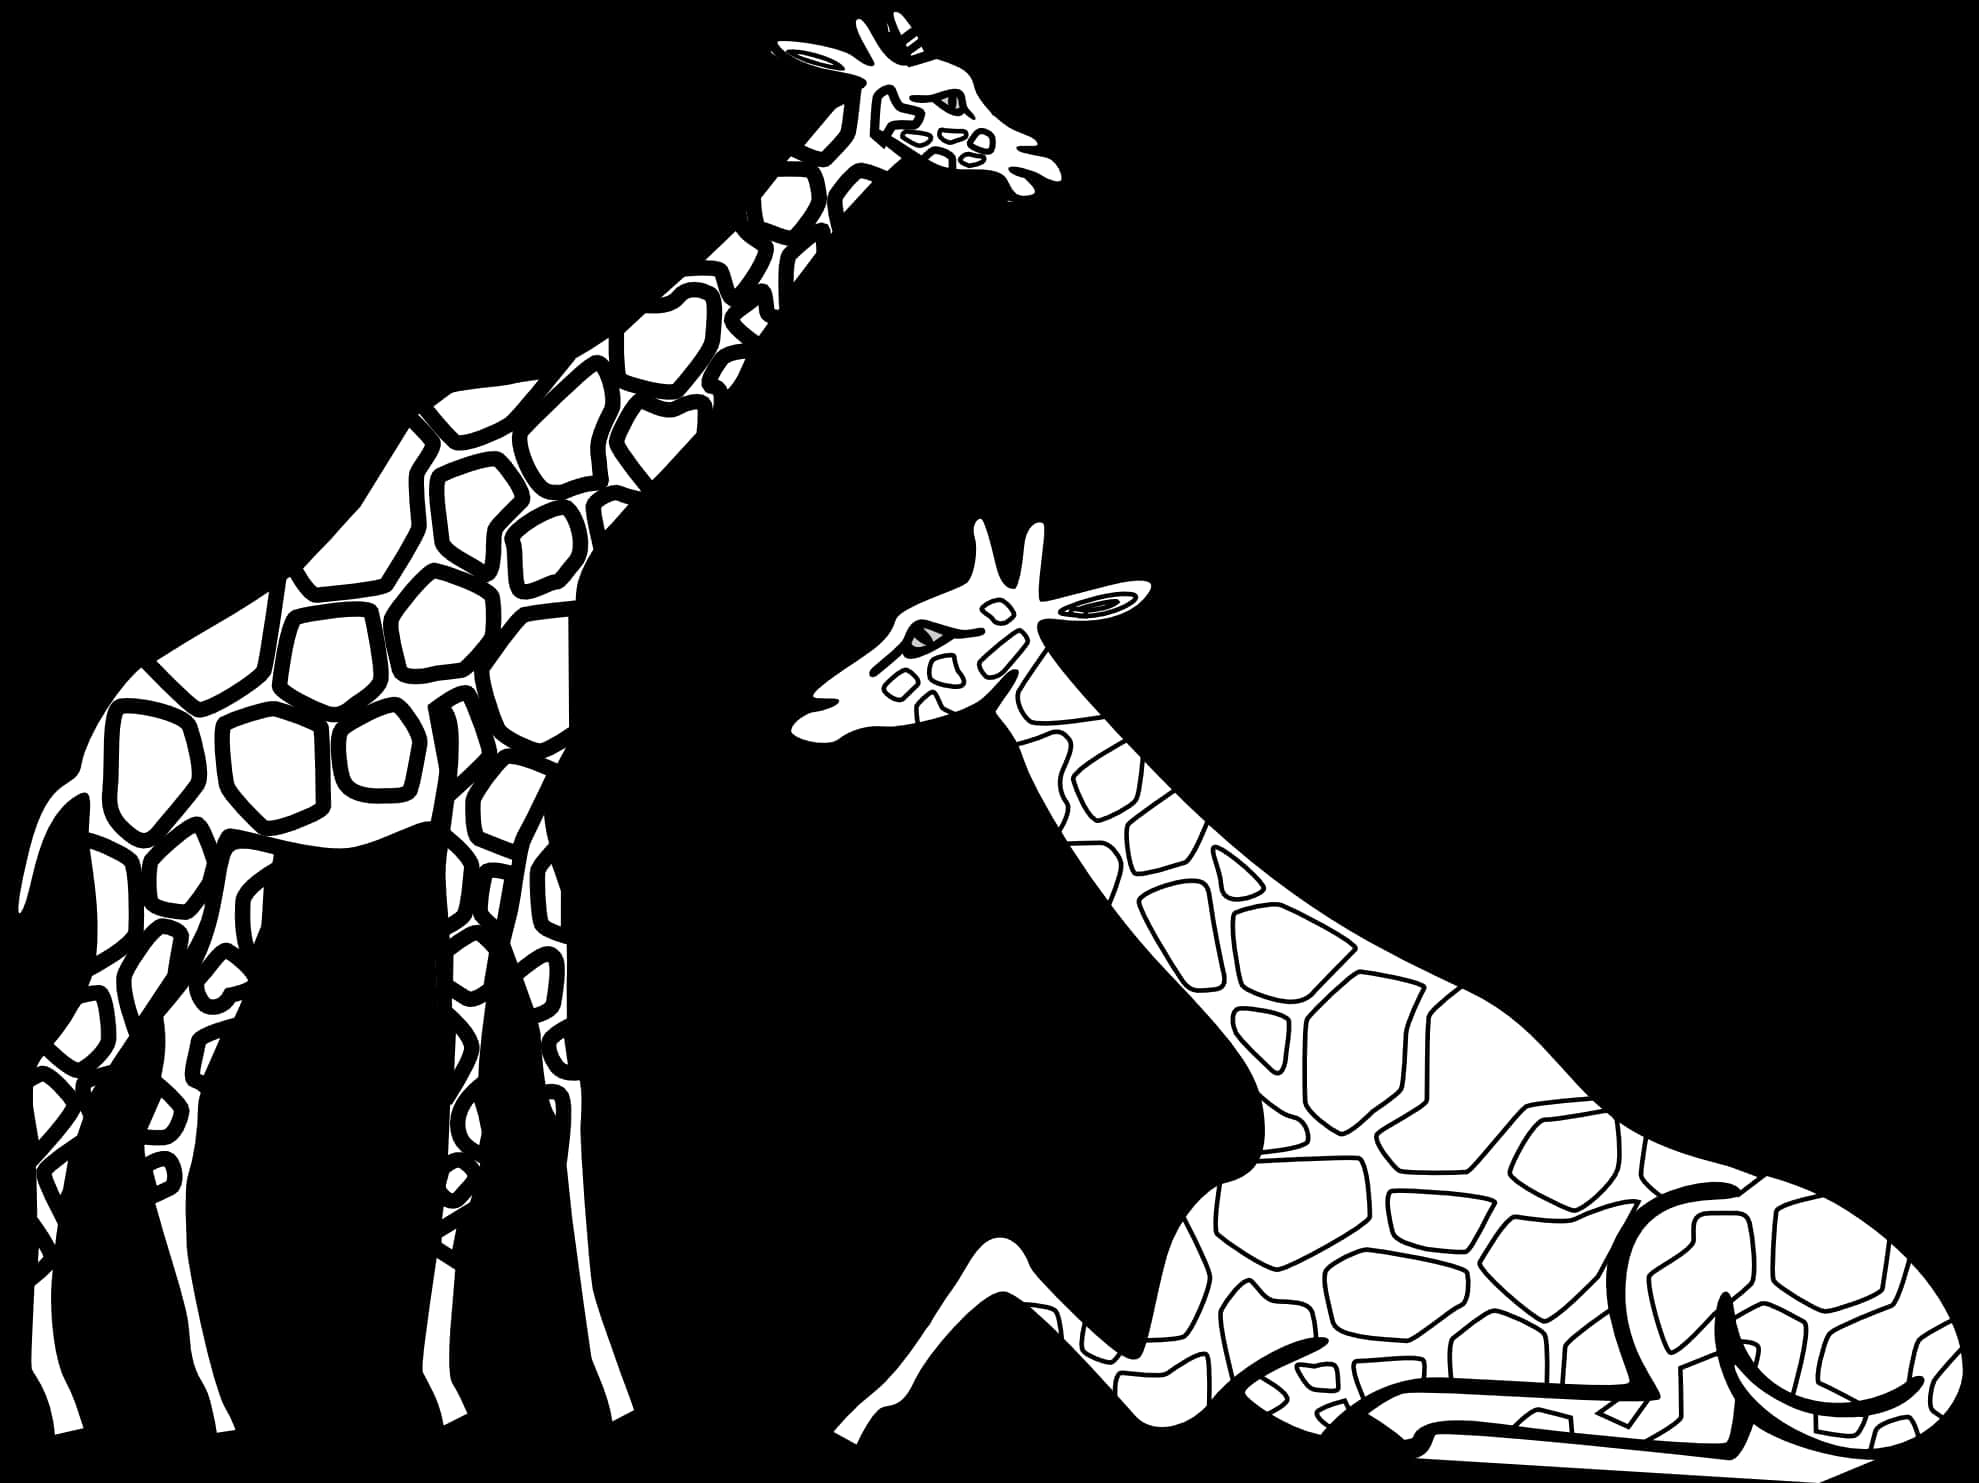 Two Black Giraffe Outlines